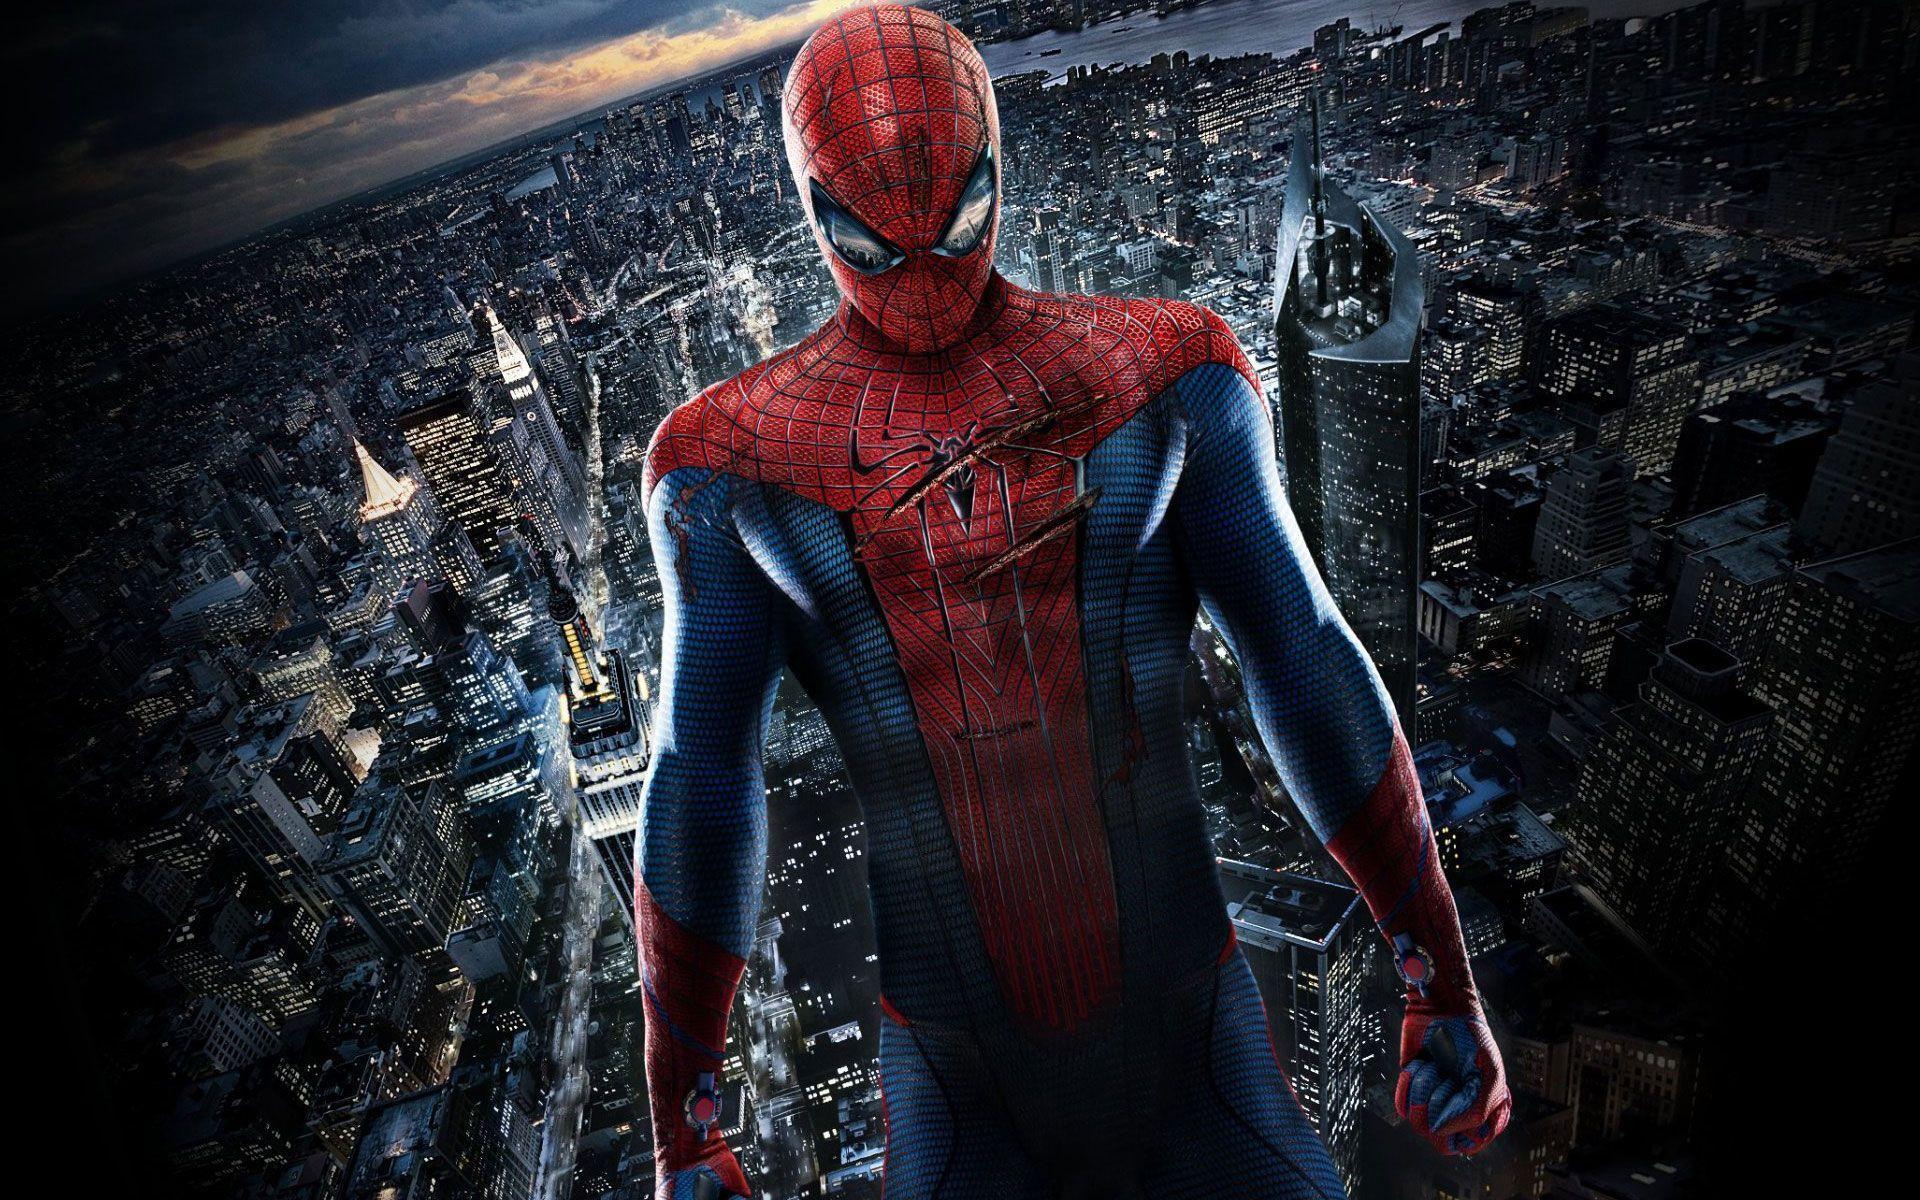 Spiderman 4 Wallpaper. Spider man 4 Movie Image